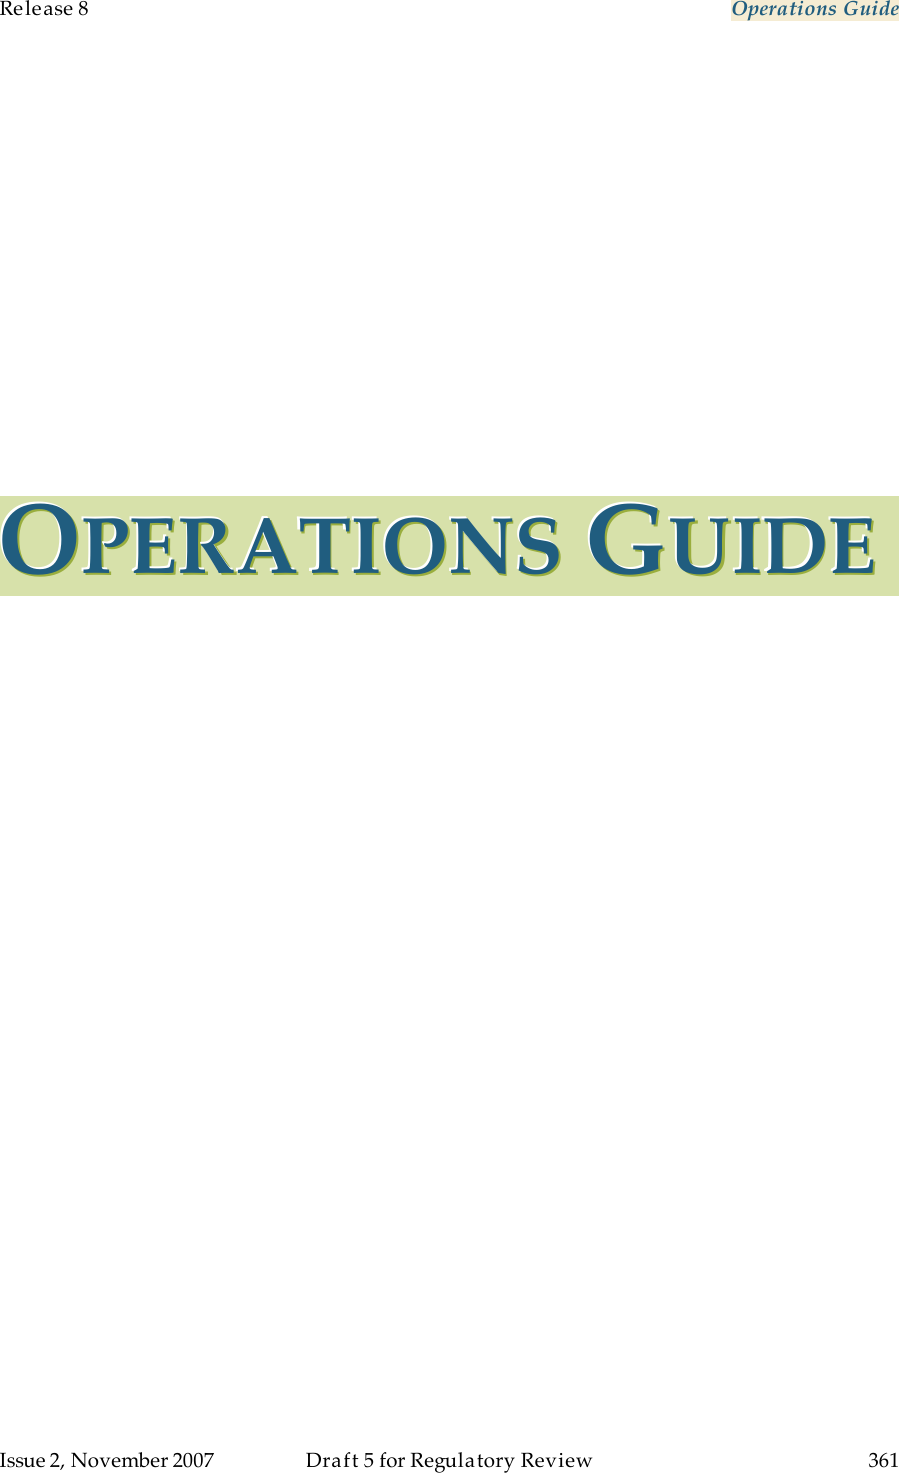 Release 8    Operations Guide   Issue 2, November 2007  Draft 5 for Regulatory Review  361     OOOPPPEEERRRAAATTTIIIOOONNNSSS   GGGUUUIIIDDDEEE   